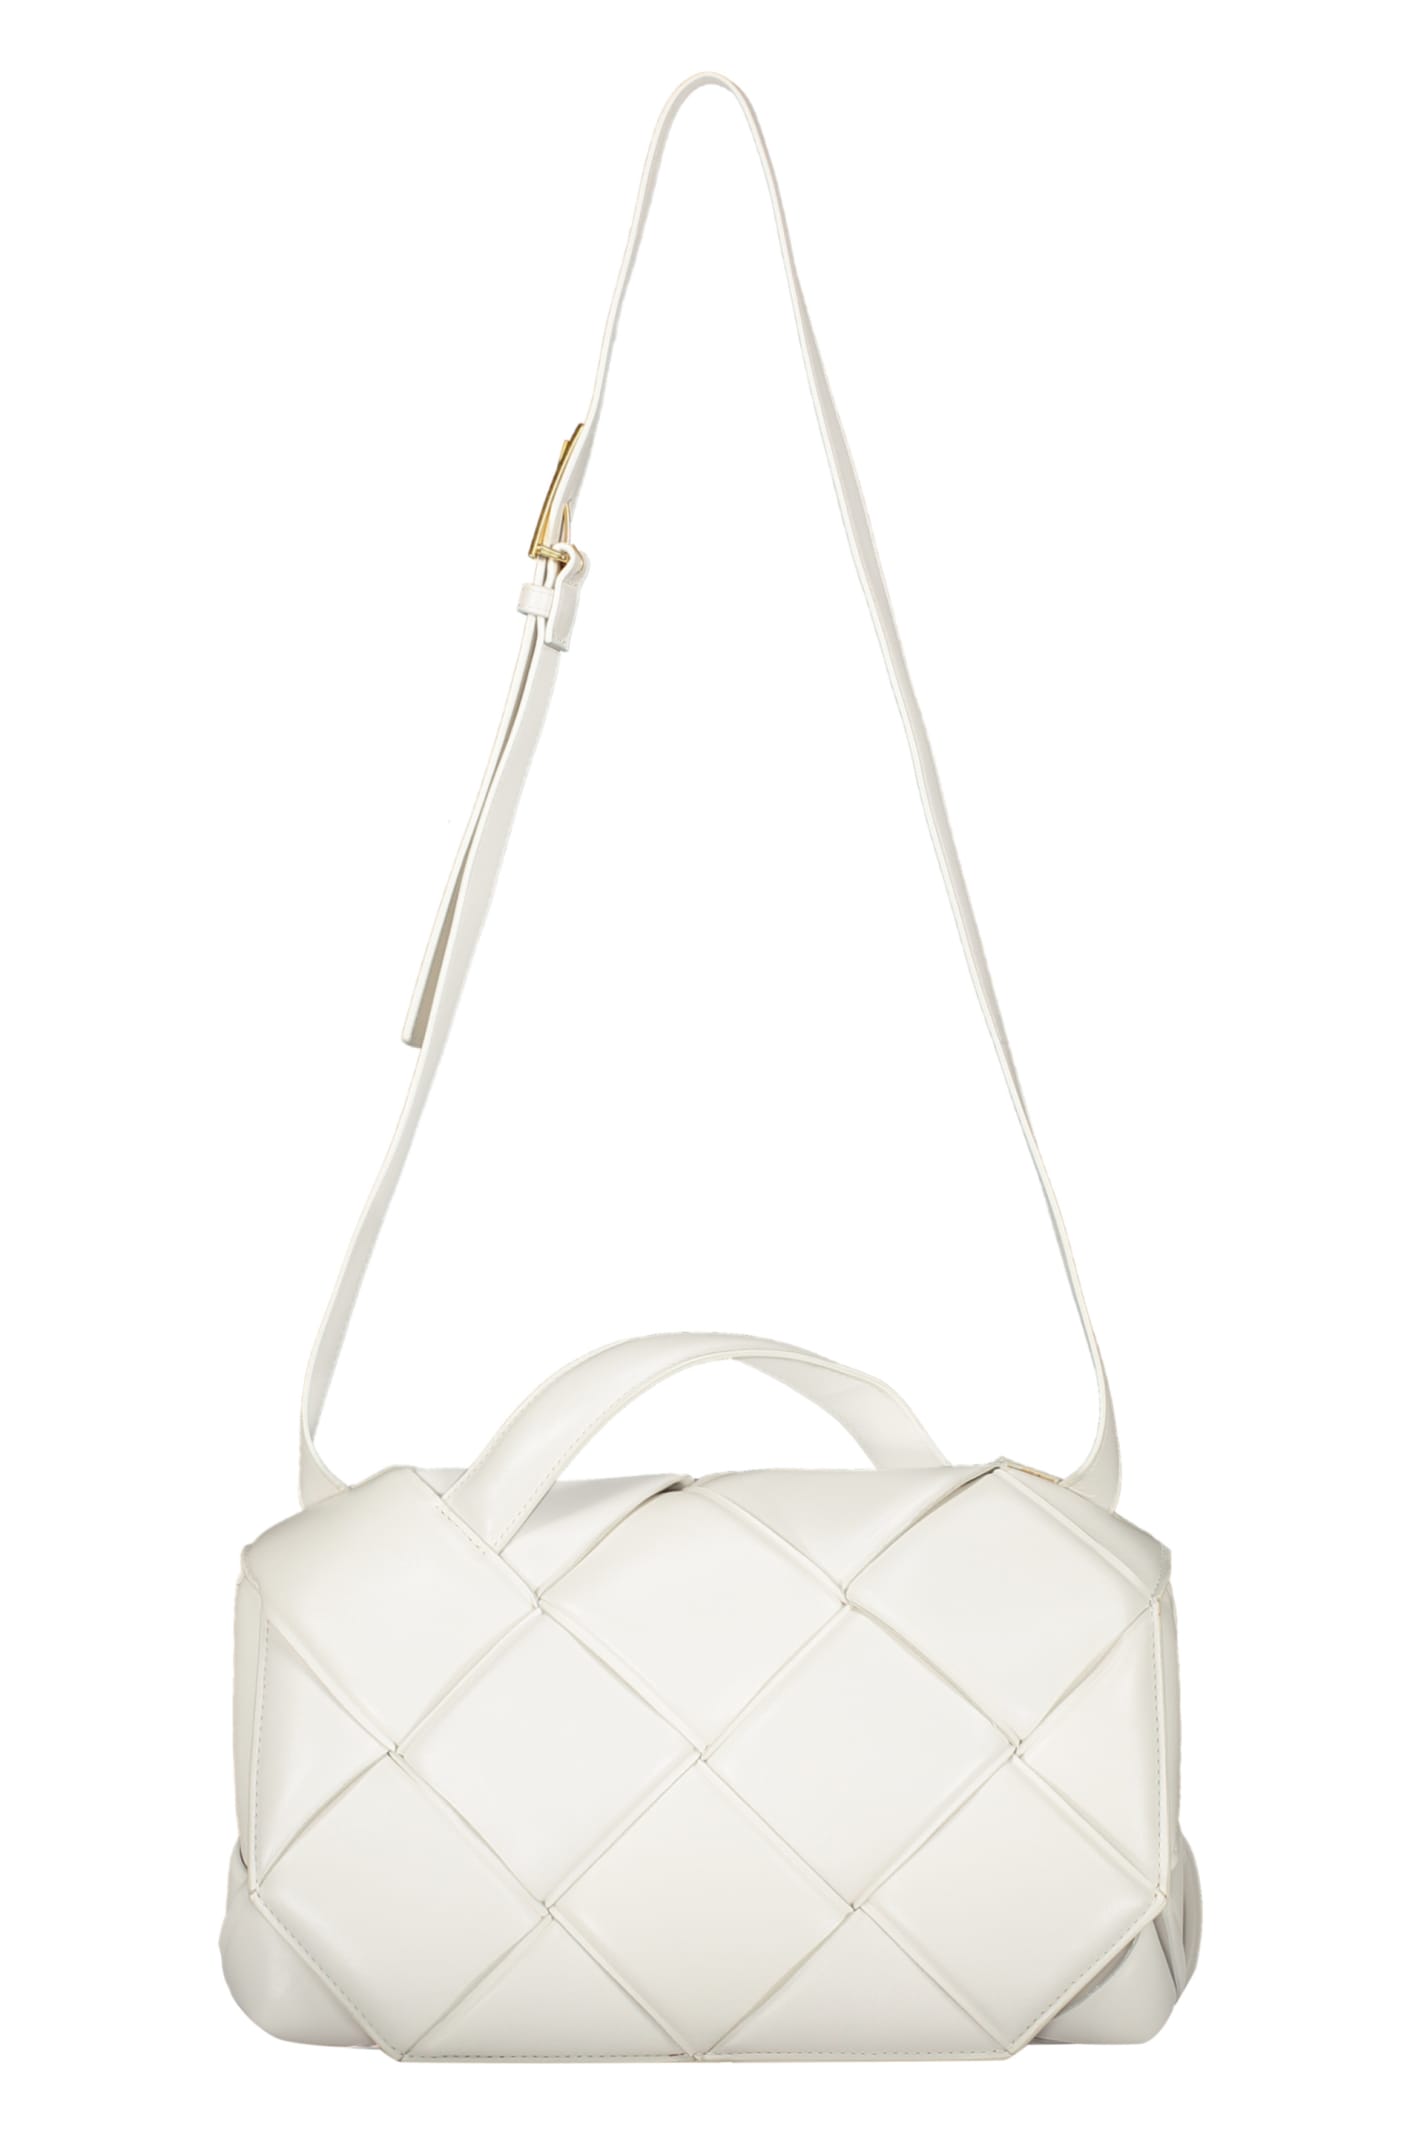 Bottega Veneta Intrecciato Nappa Handbag In White